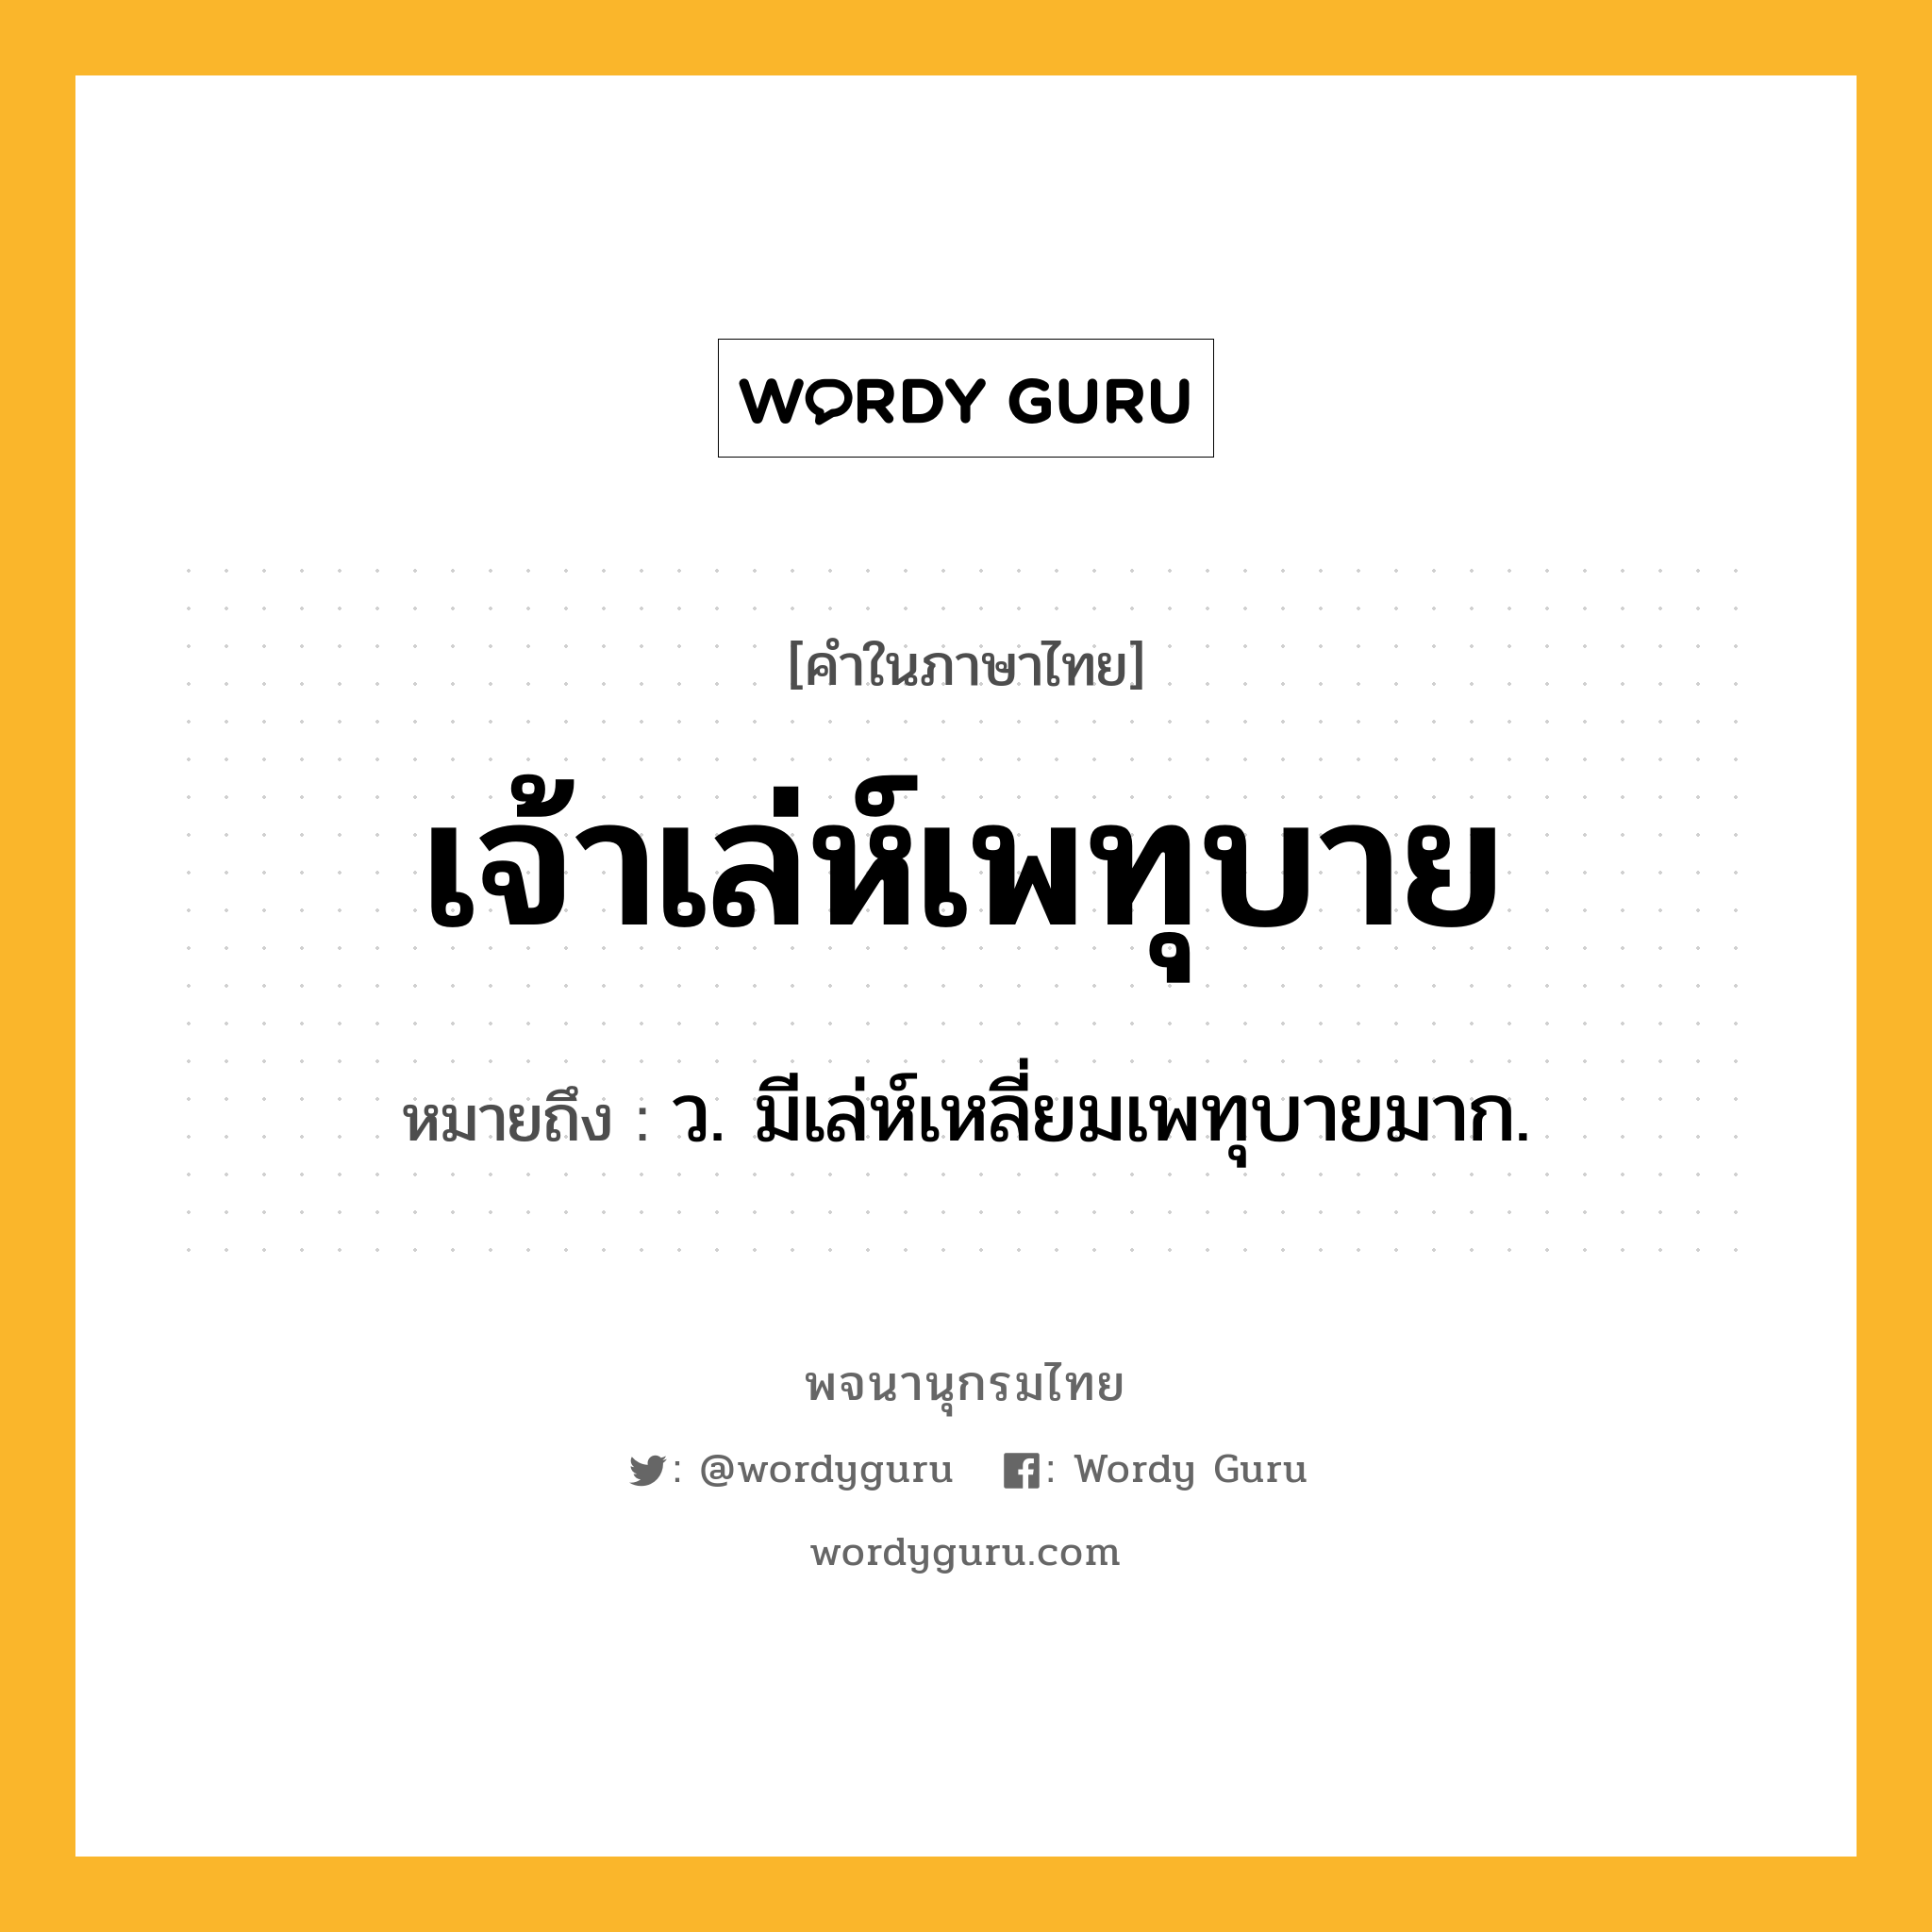 เจ้าเล่ห์เพทุบาย หมายถึงอะไร?, คำในภาษาไทย เจ้าเล่ห์เพทุบาย หมายถึง ว. มีเล่ห์เหลี่ยมเพทุบายมาก.